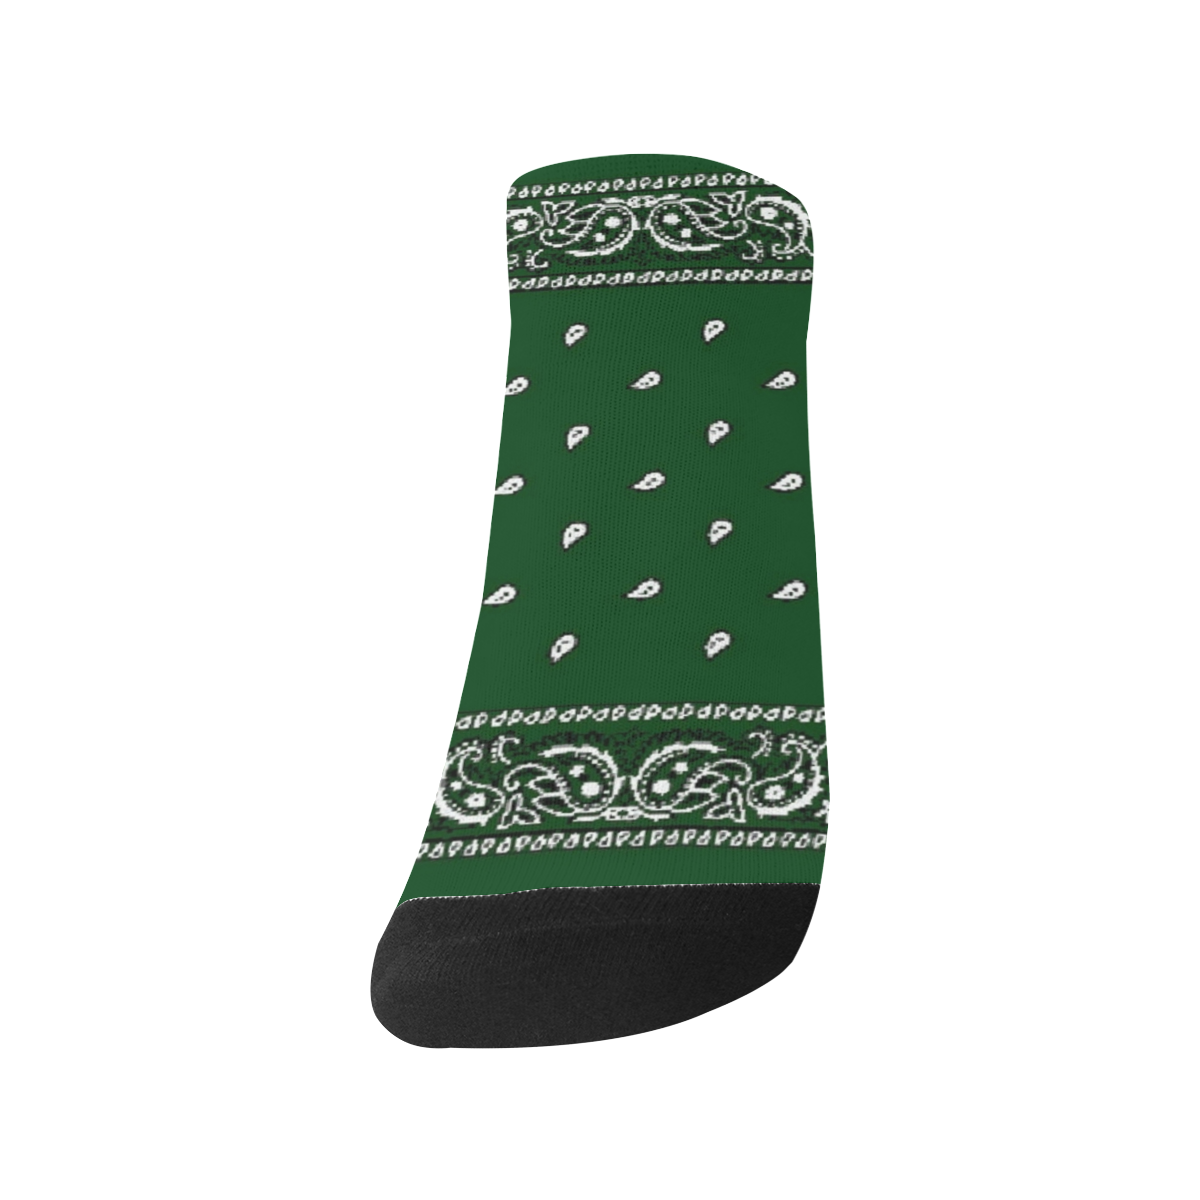 KERCHIEF PATTERN GREEN Women's Ankle Socks